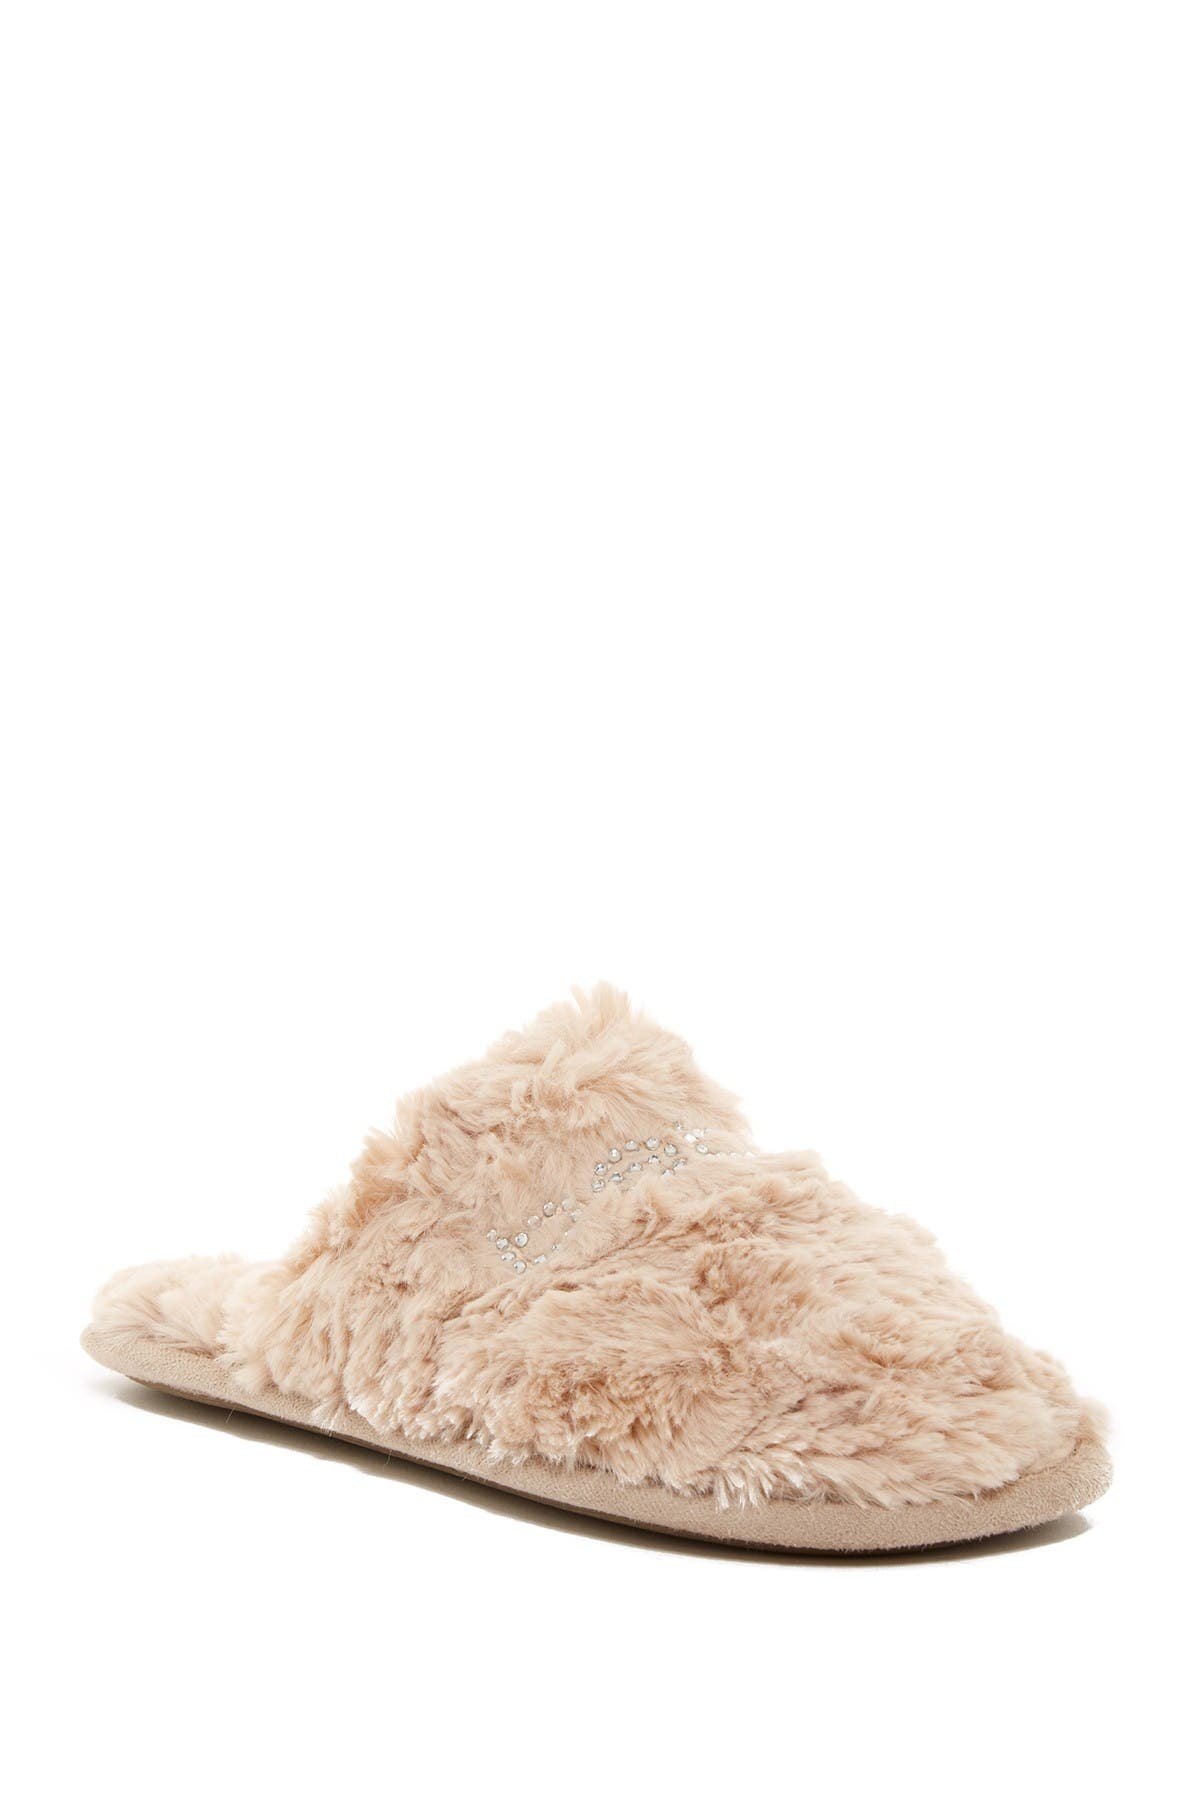 bebe fur slippers